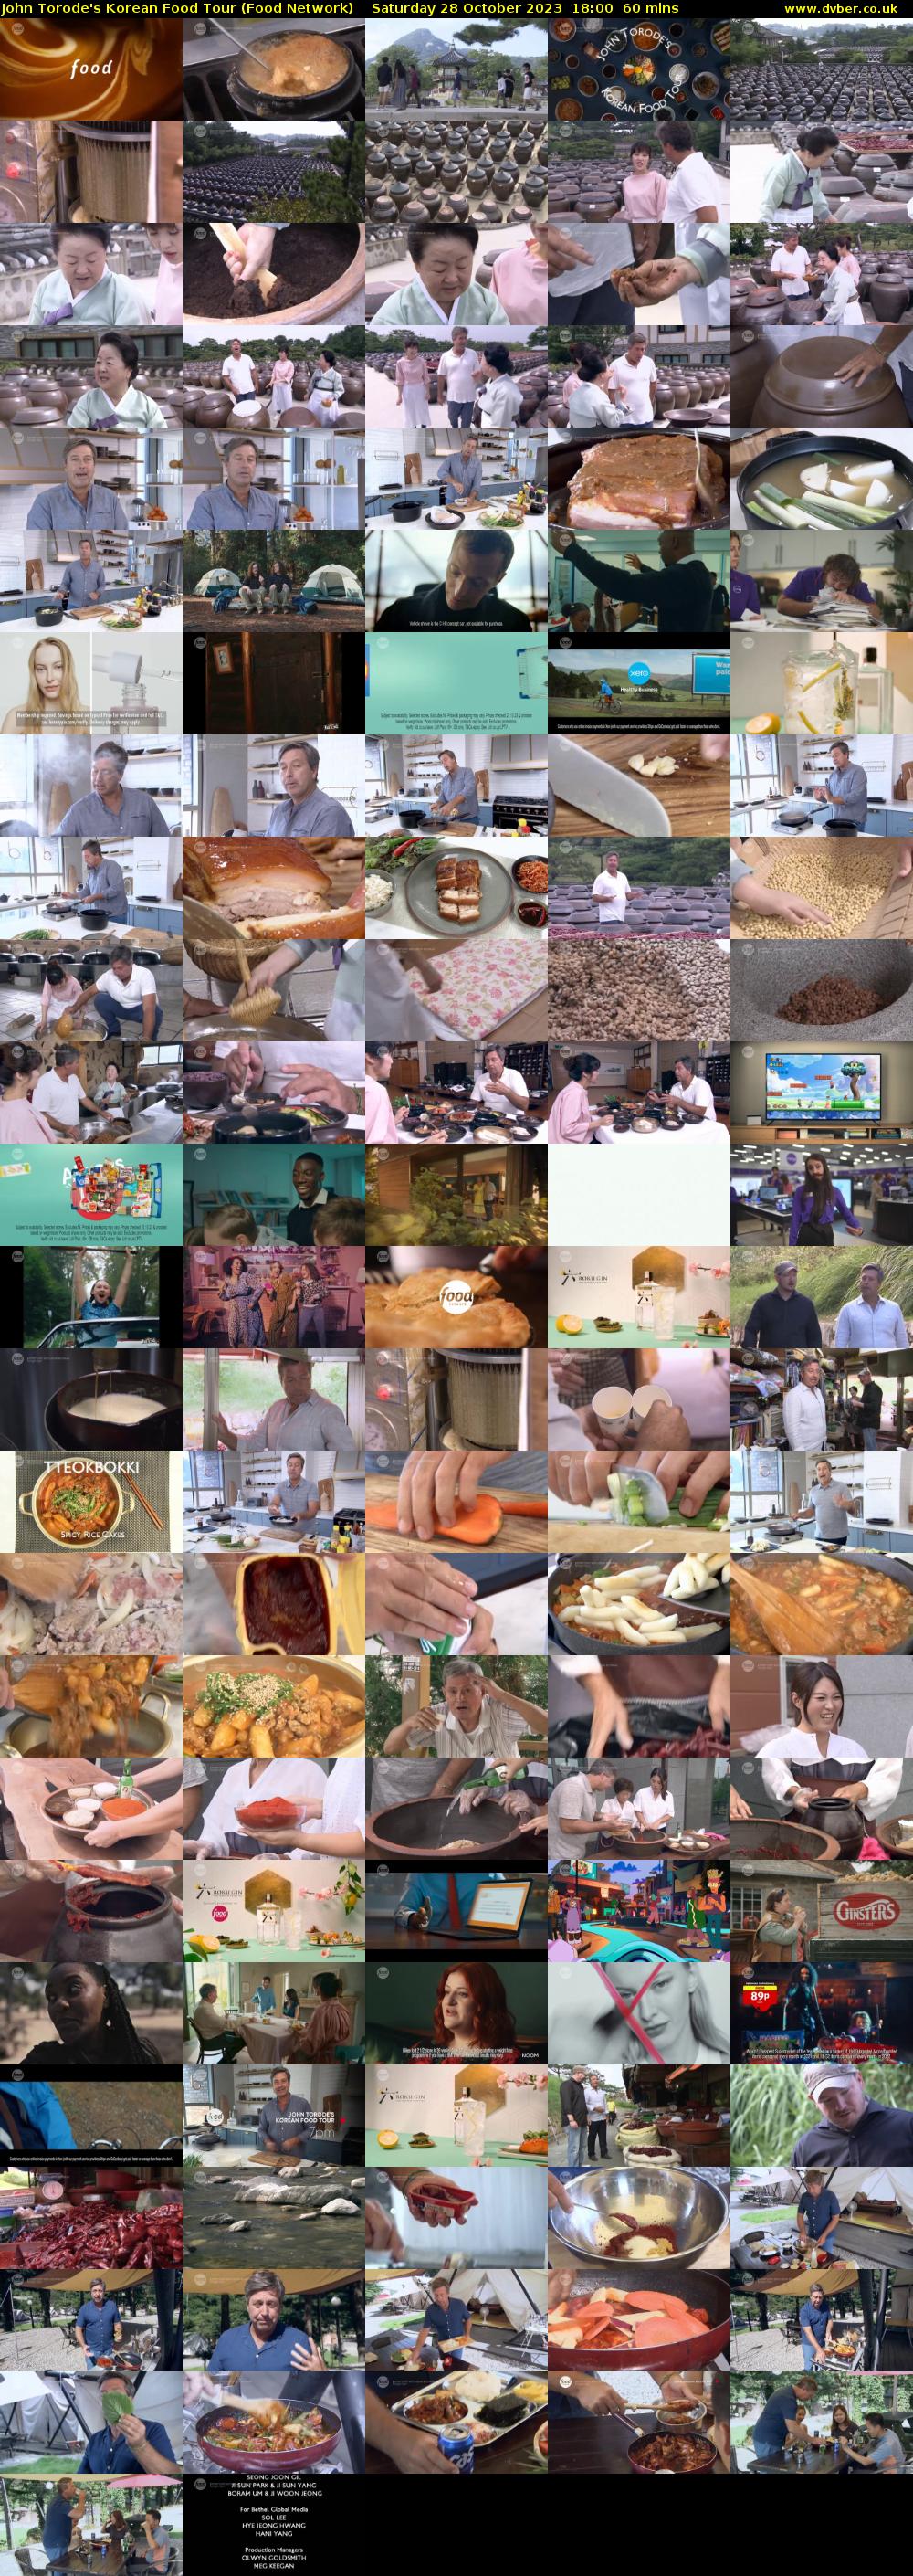 John Torode's Korean Food Tour (Food Network) Saturday 28 October 2023 18:00 - 19:00